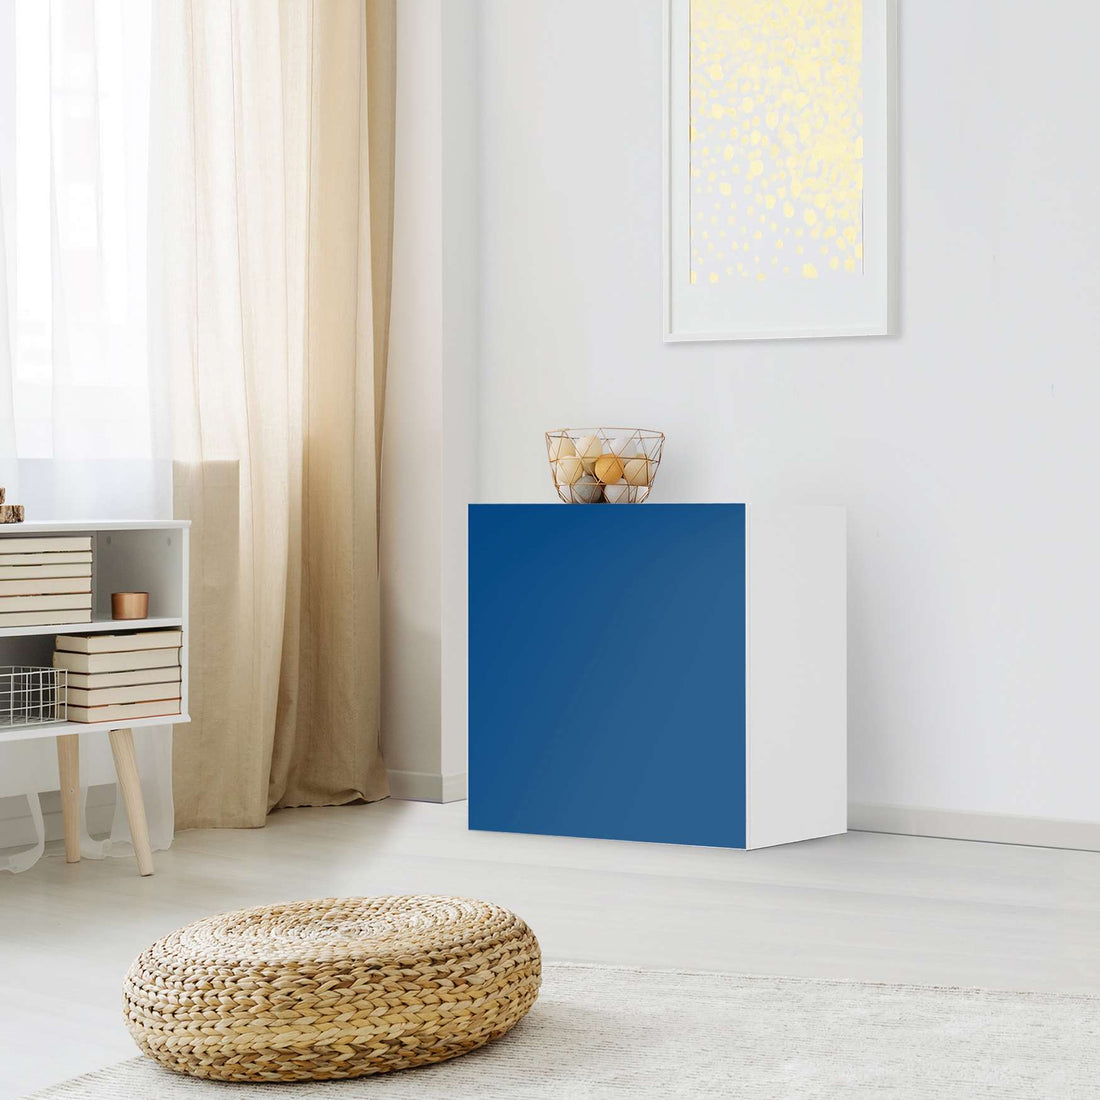 Klebefolie für Möbel Blau Dark - IKEA Besta Regal 1 Türe - Wohnzimmer